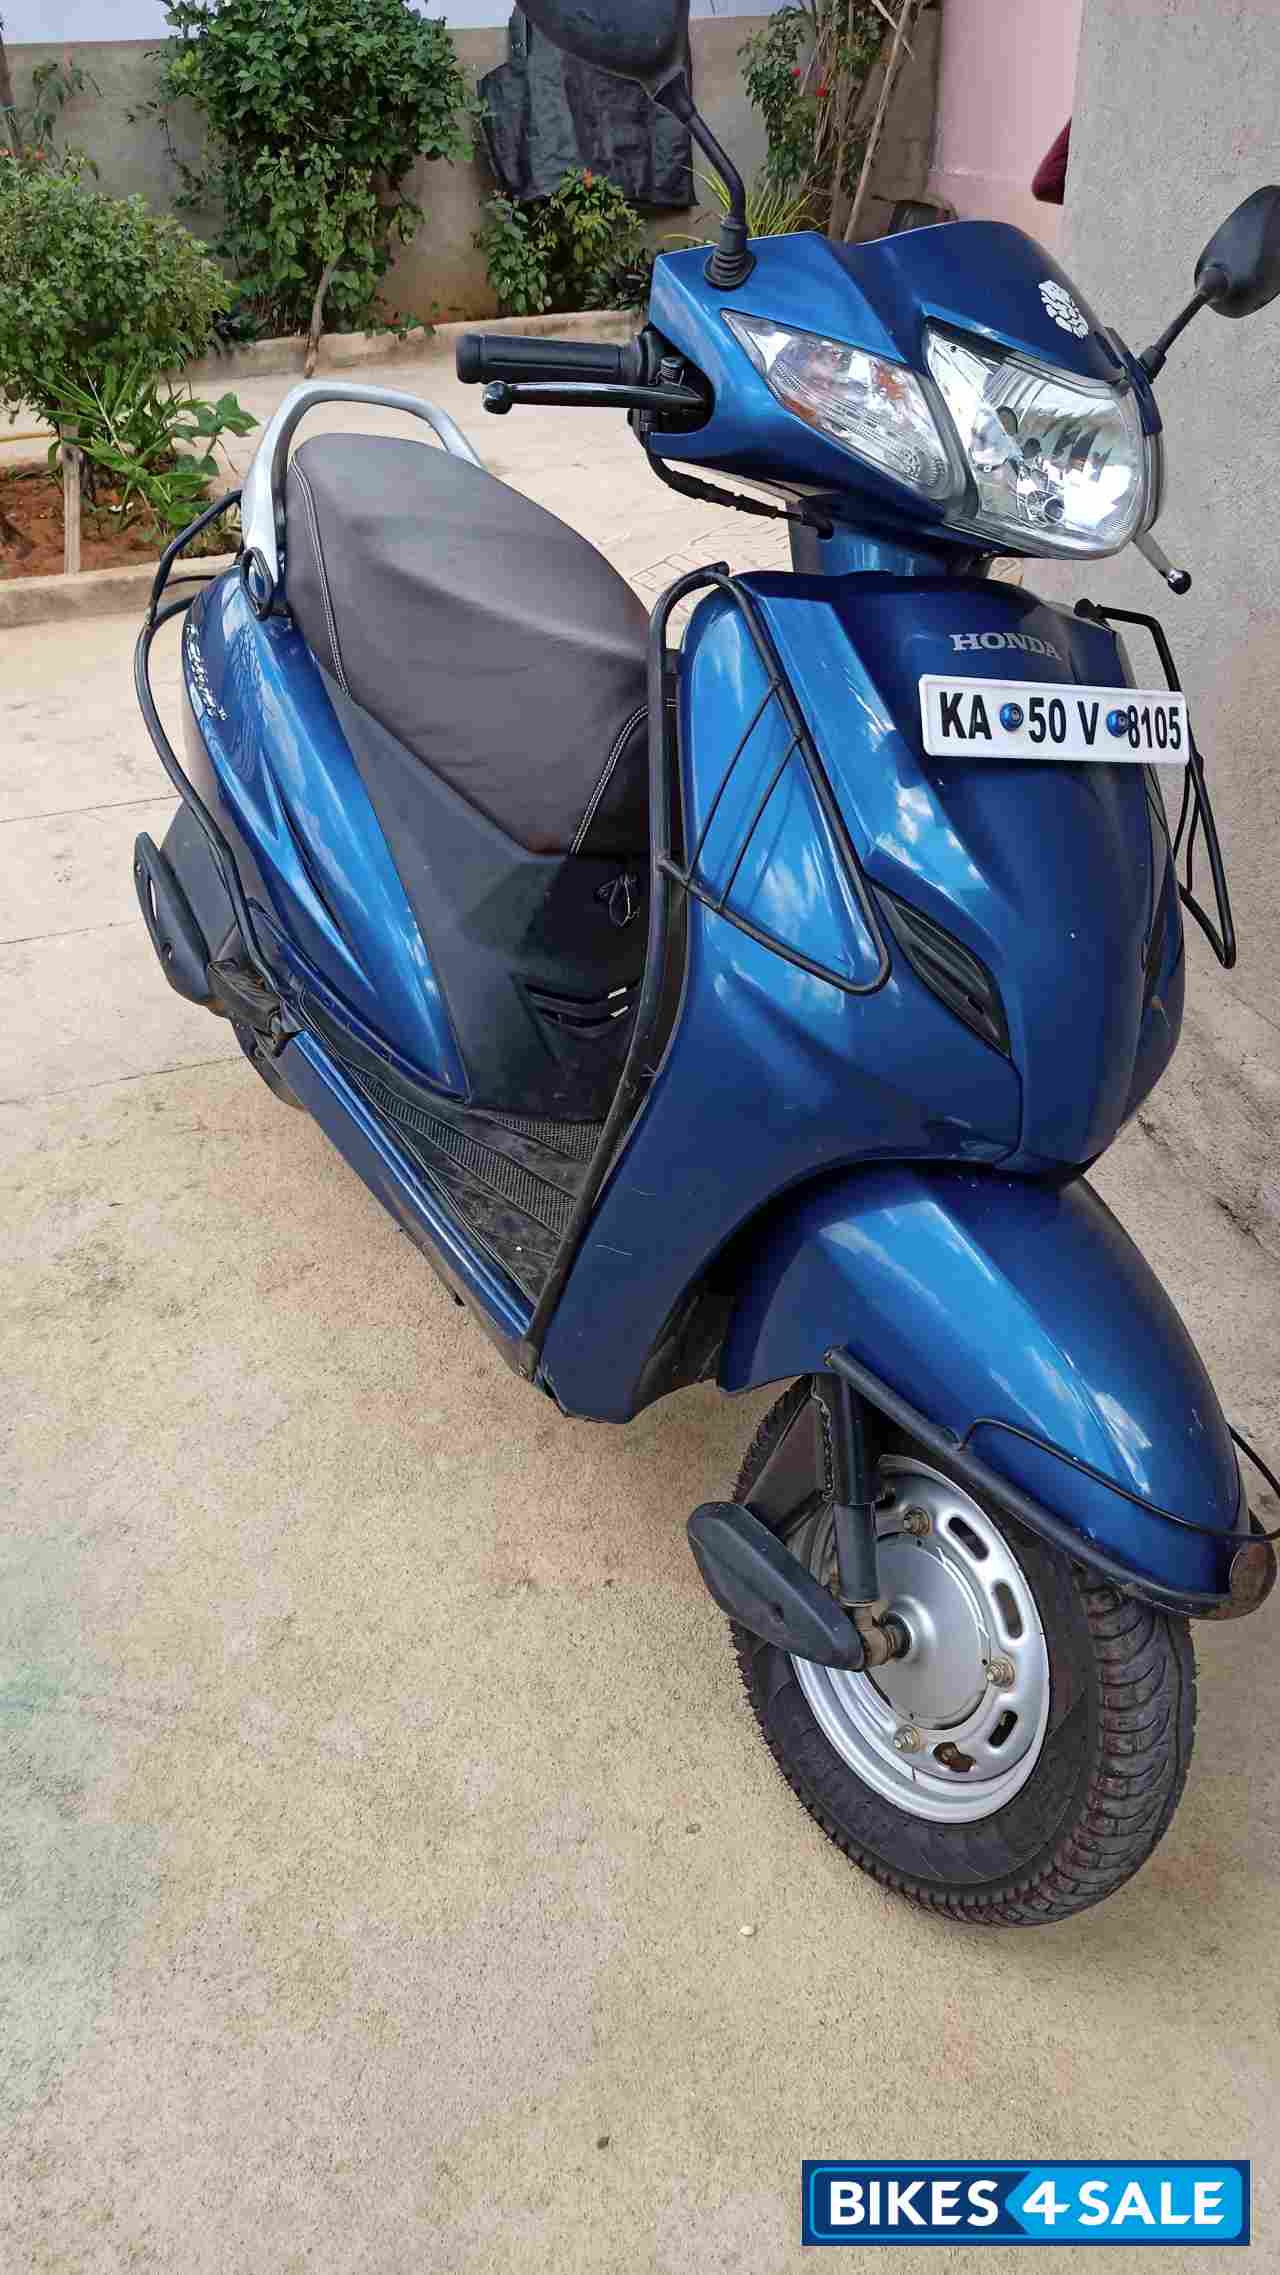 Used 2016 model Honda Activa 3G for sale in Chikballapur ...